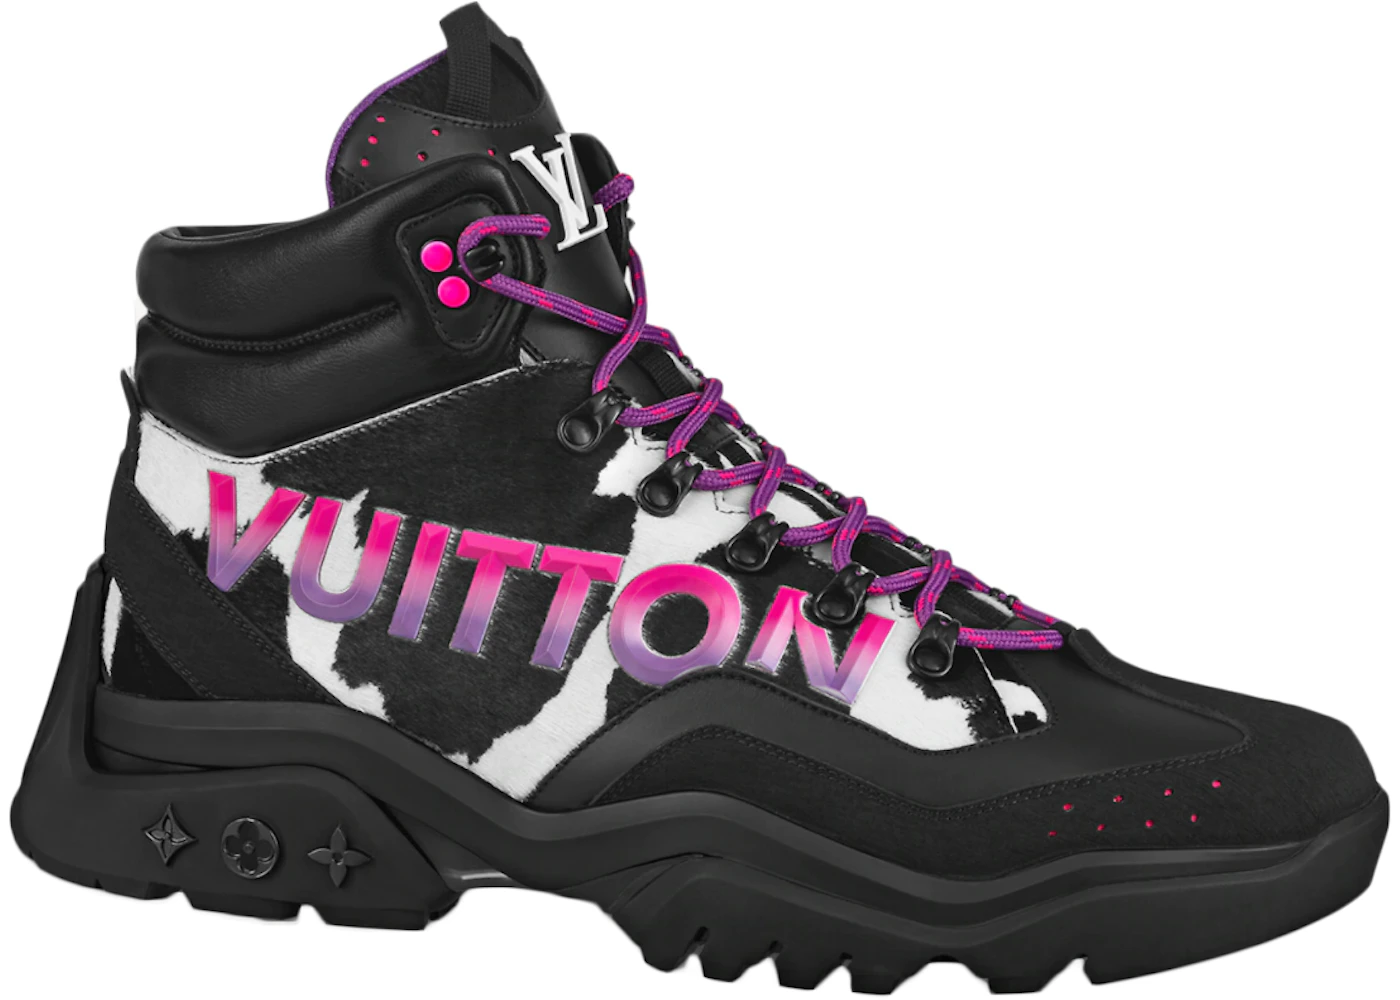 Louis Vuitton Millenium Ankle Boot Black Pink Men's - 1A995F - US